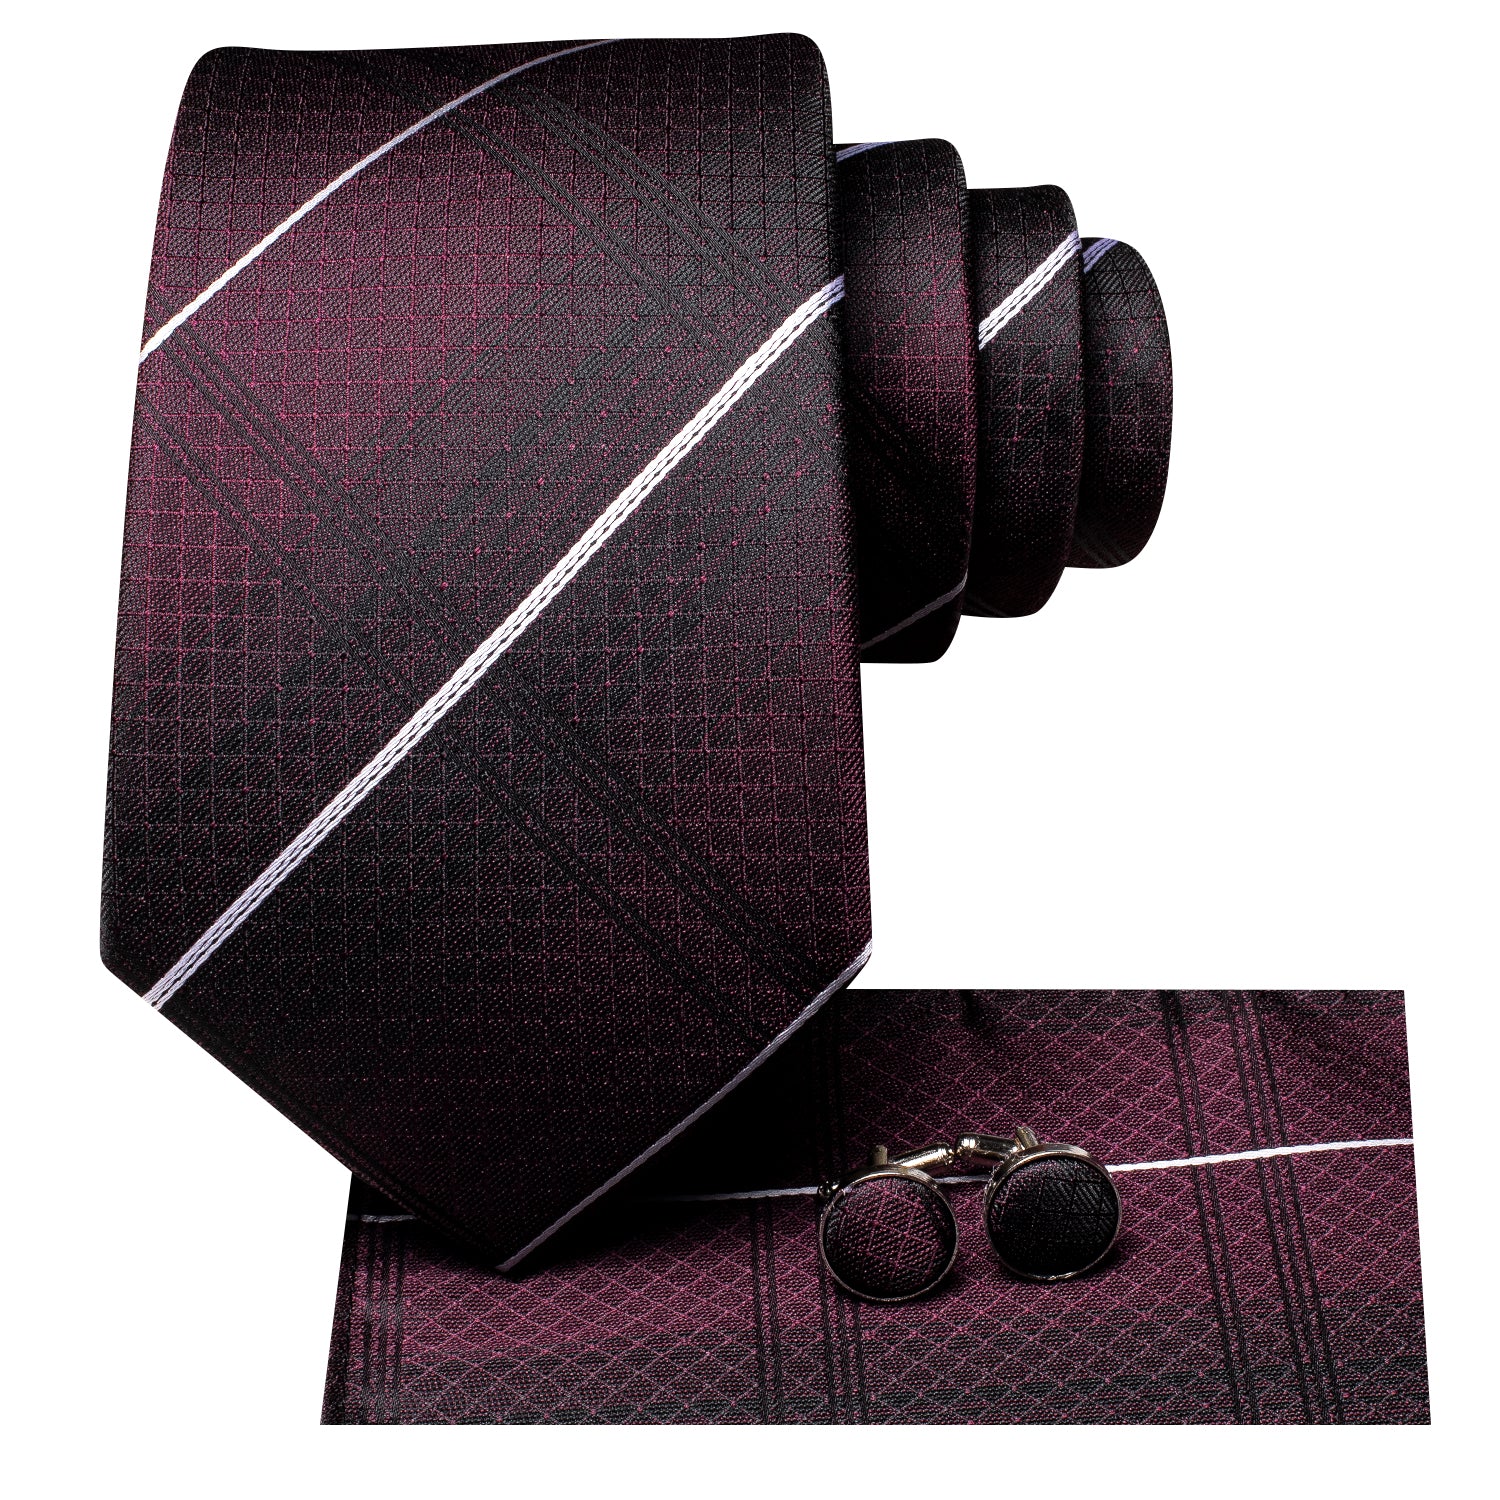 New Burgundy Red White Strip Silk Tie Pocket Square Cufflinks Set